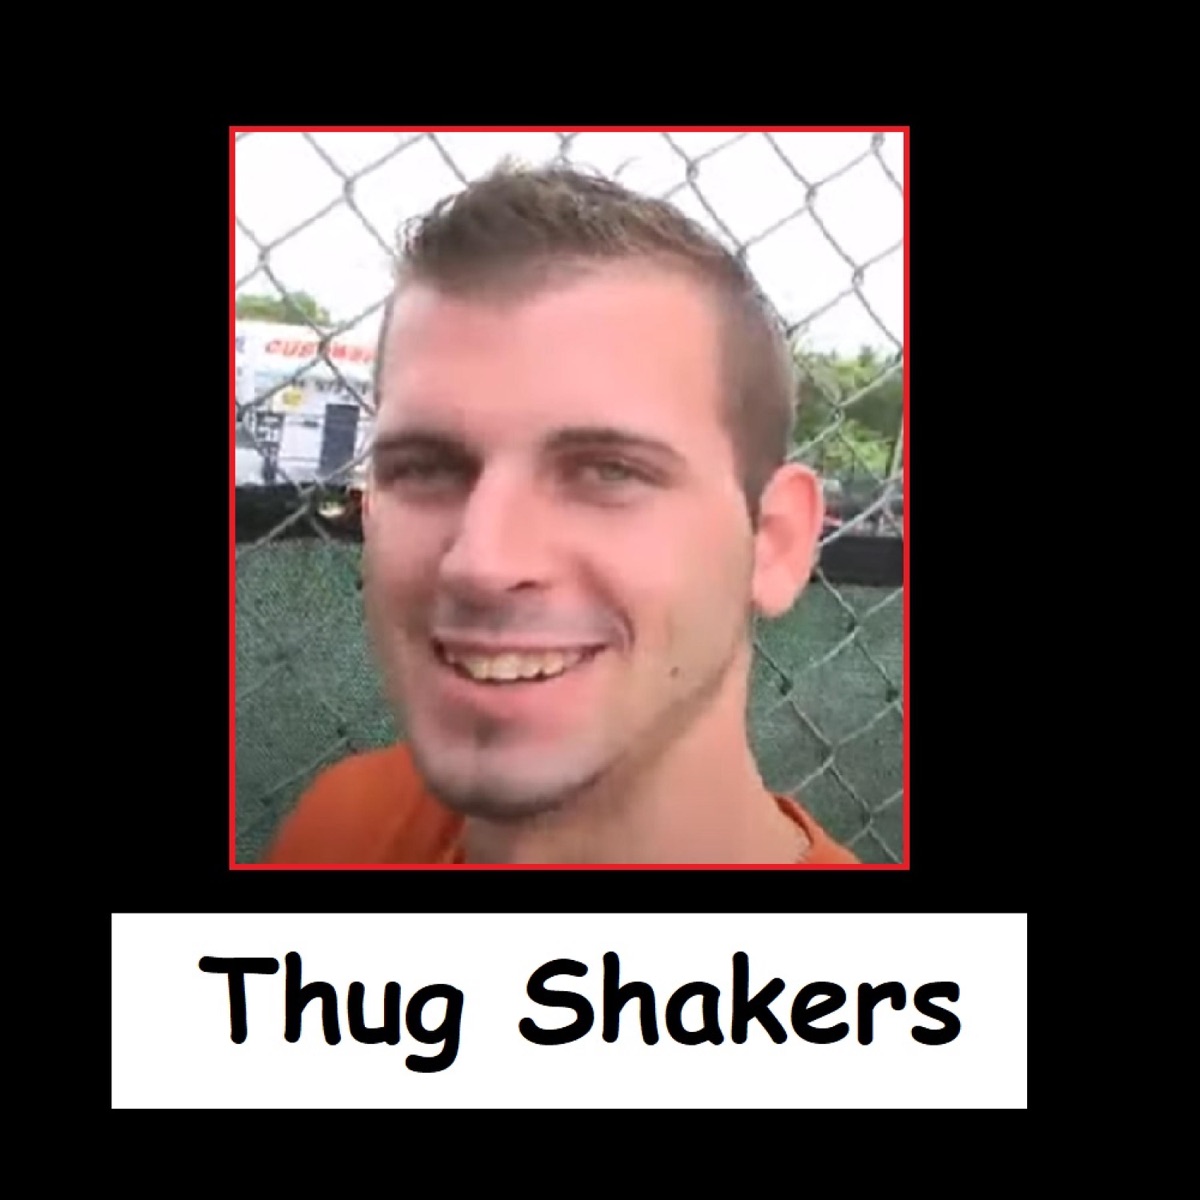 thug shakers